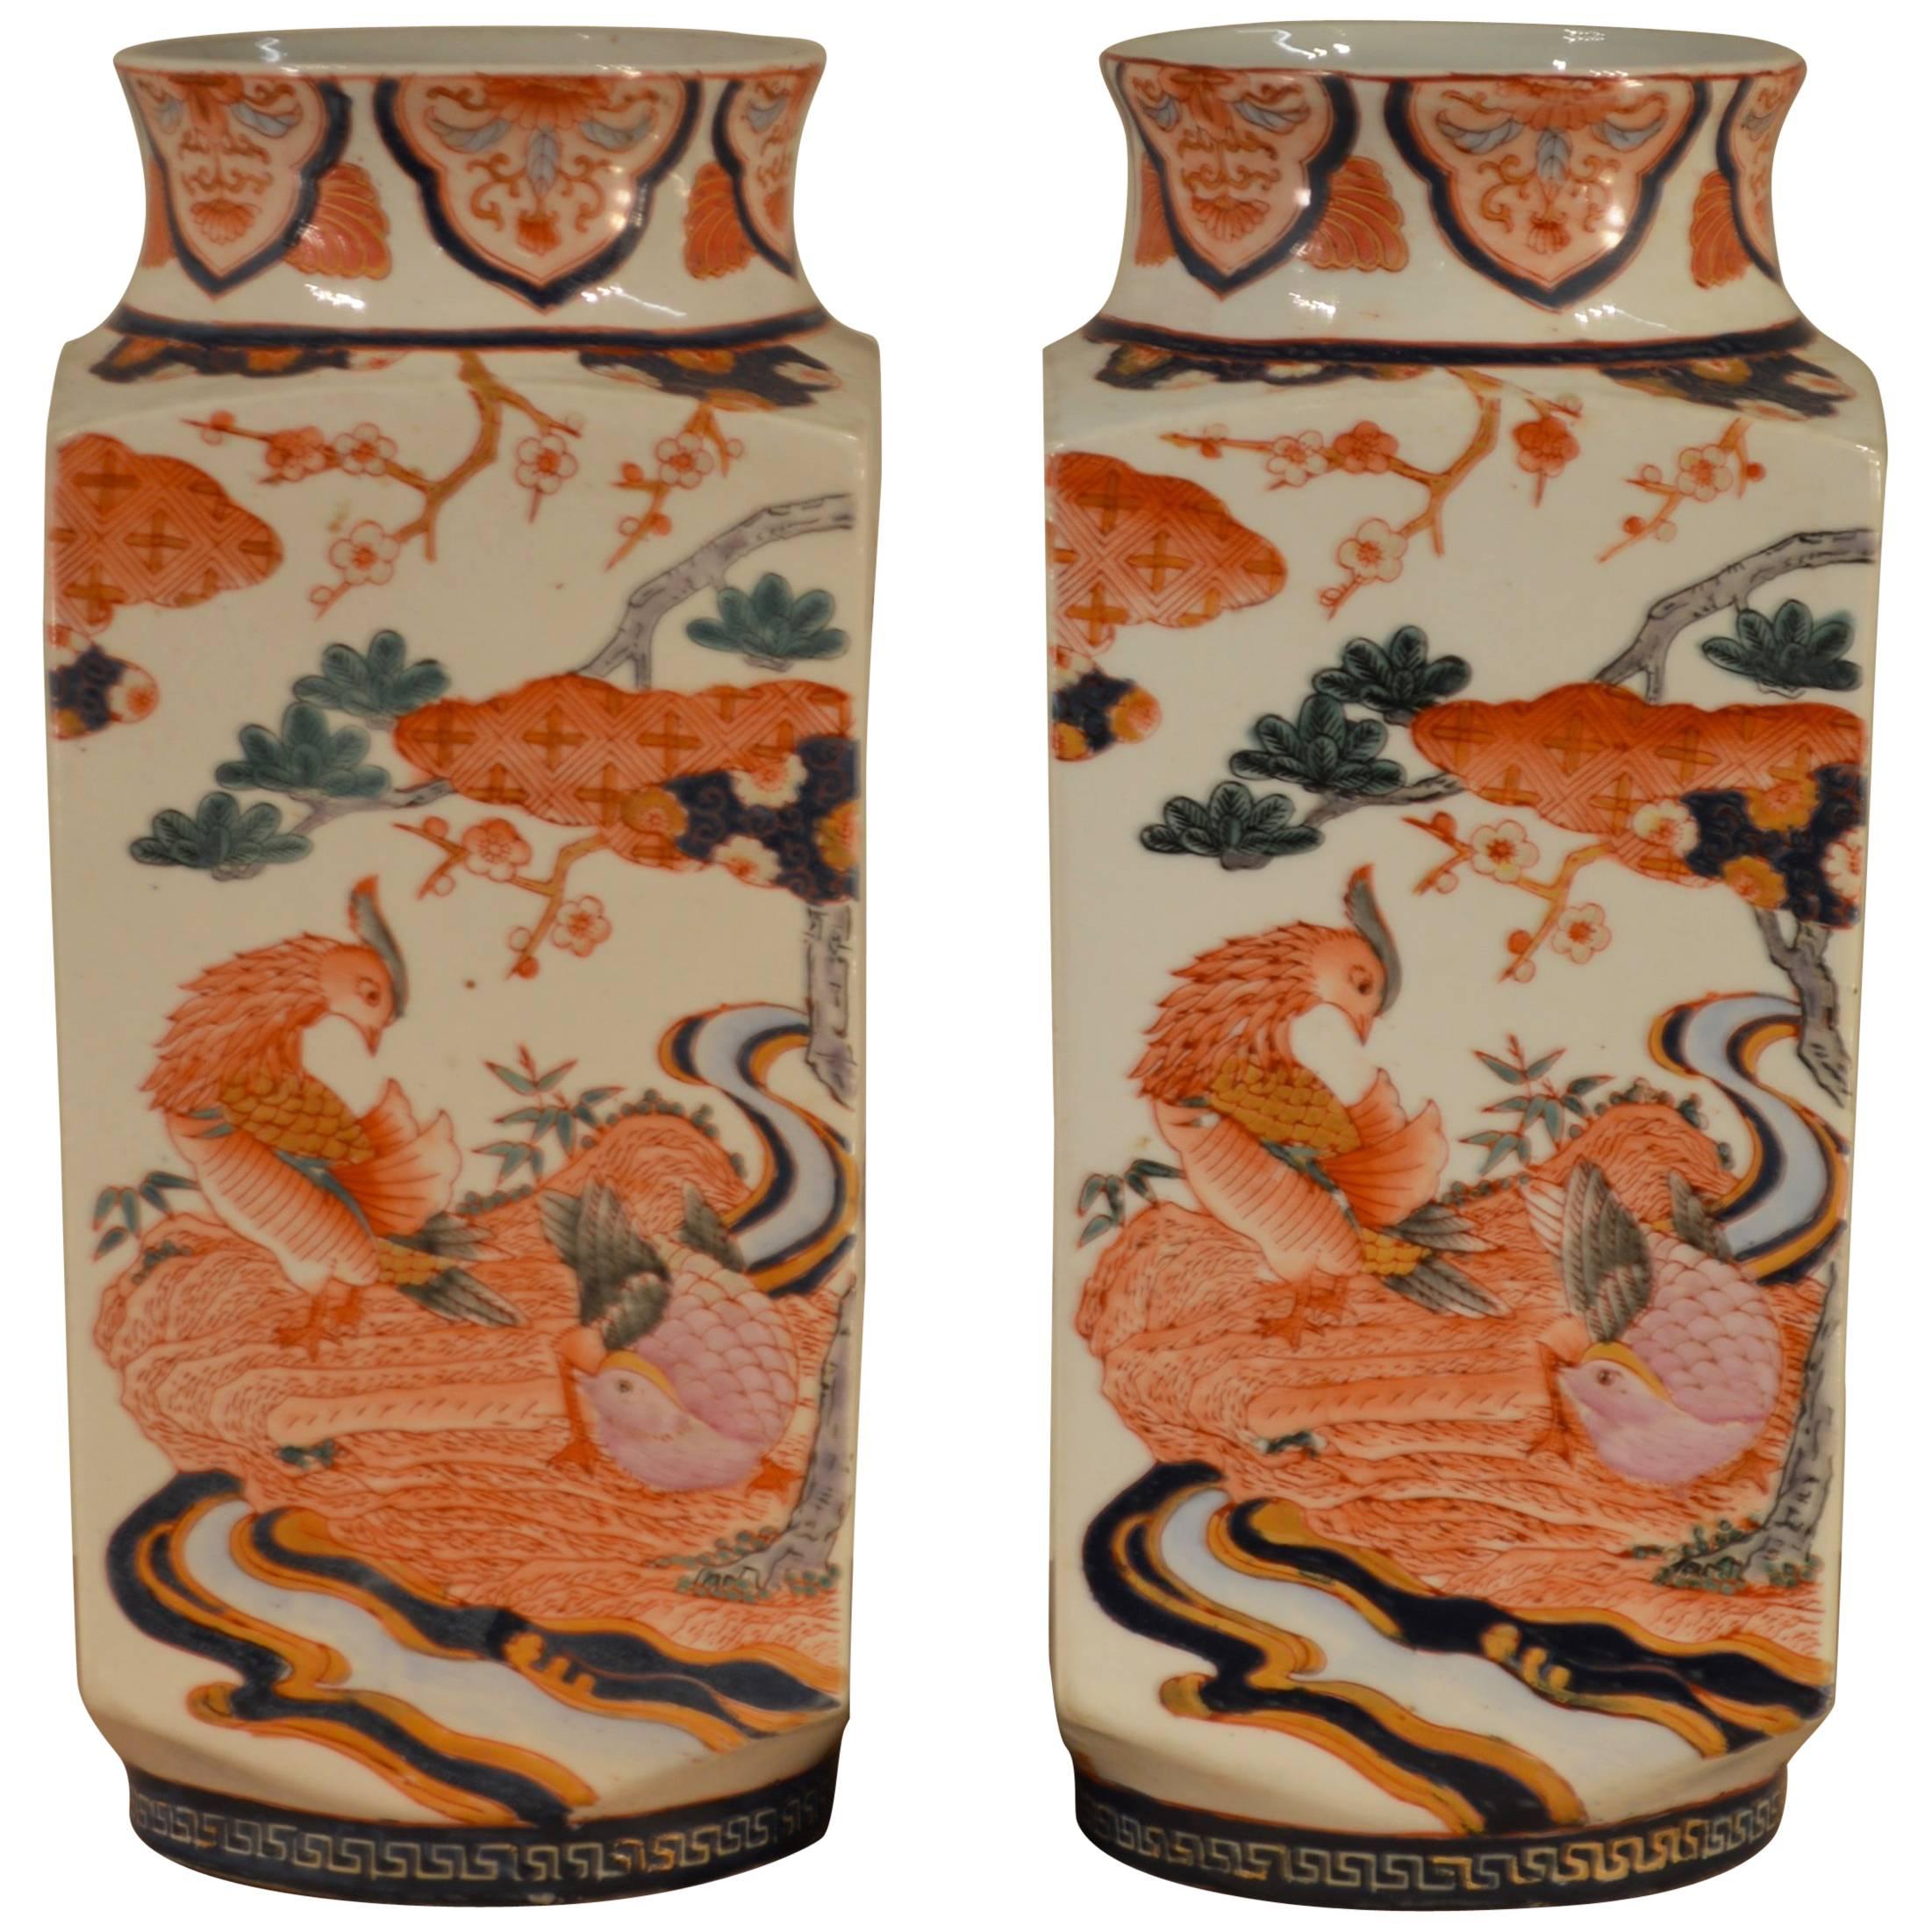 Pair of Asian Motif Vases